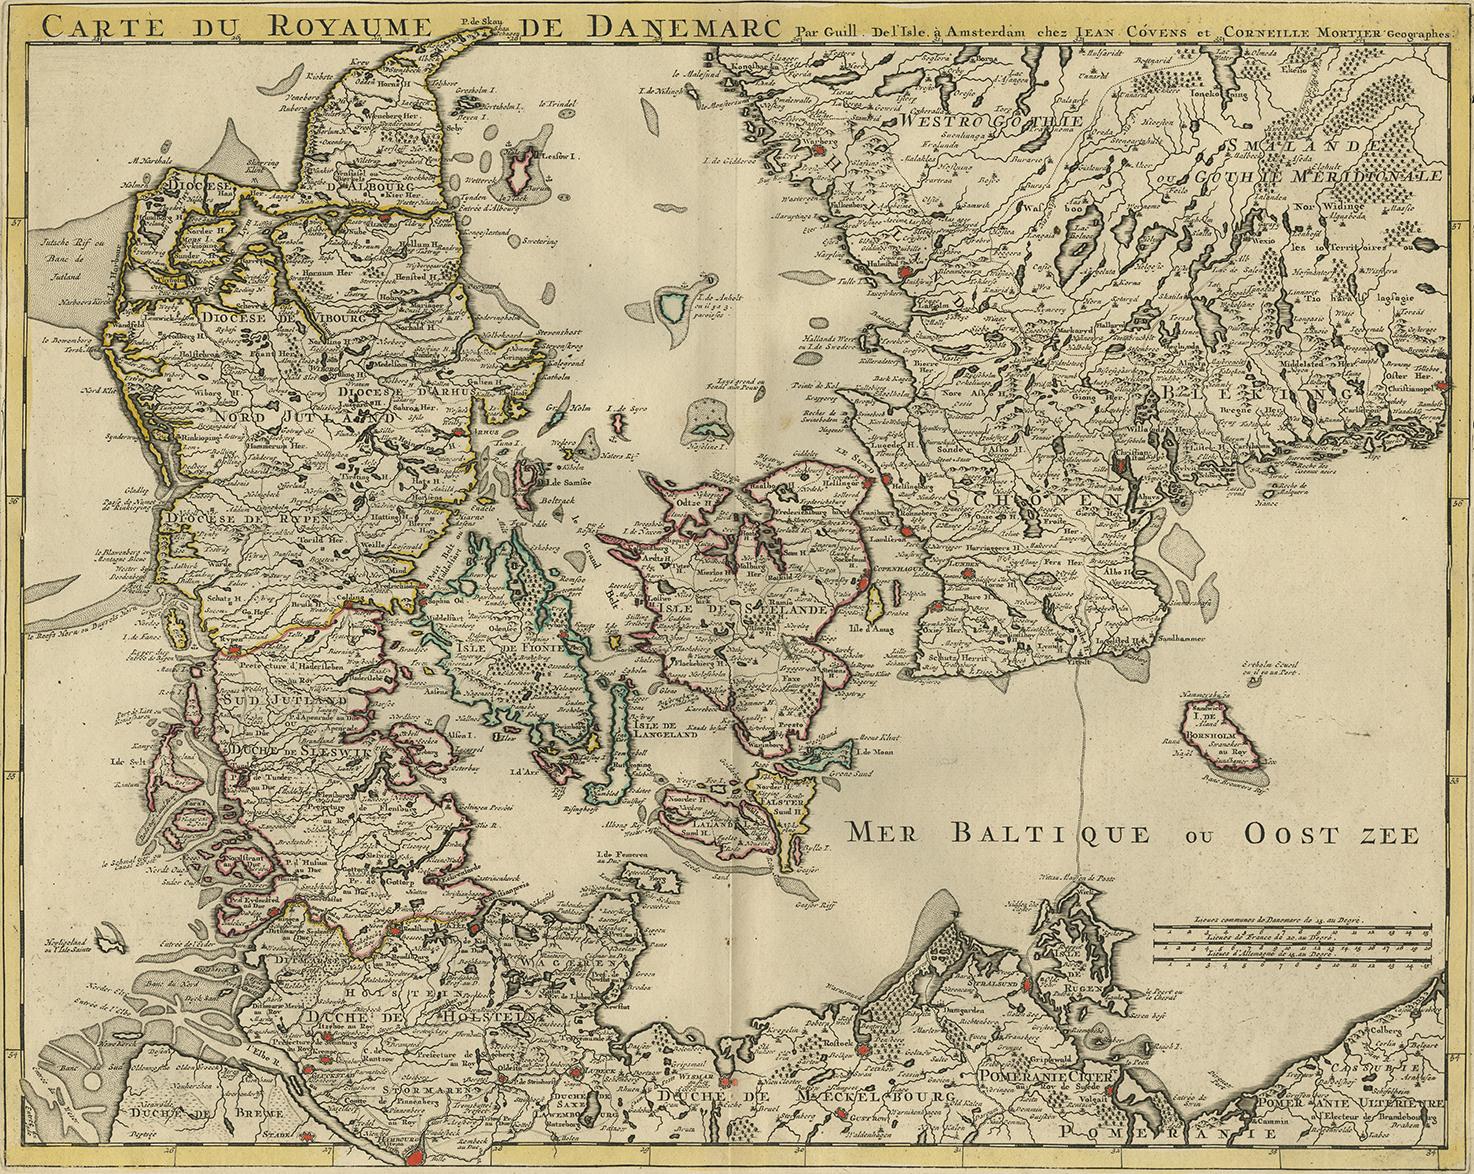 Antique Map of Denmark from: 'Atlas Nouveau ... Par Guillaume de l'Isle' Amsterdam, Covens & Mortier, 1730.